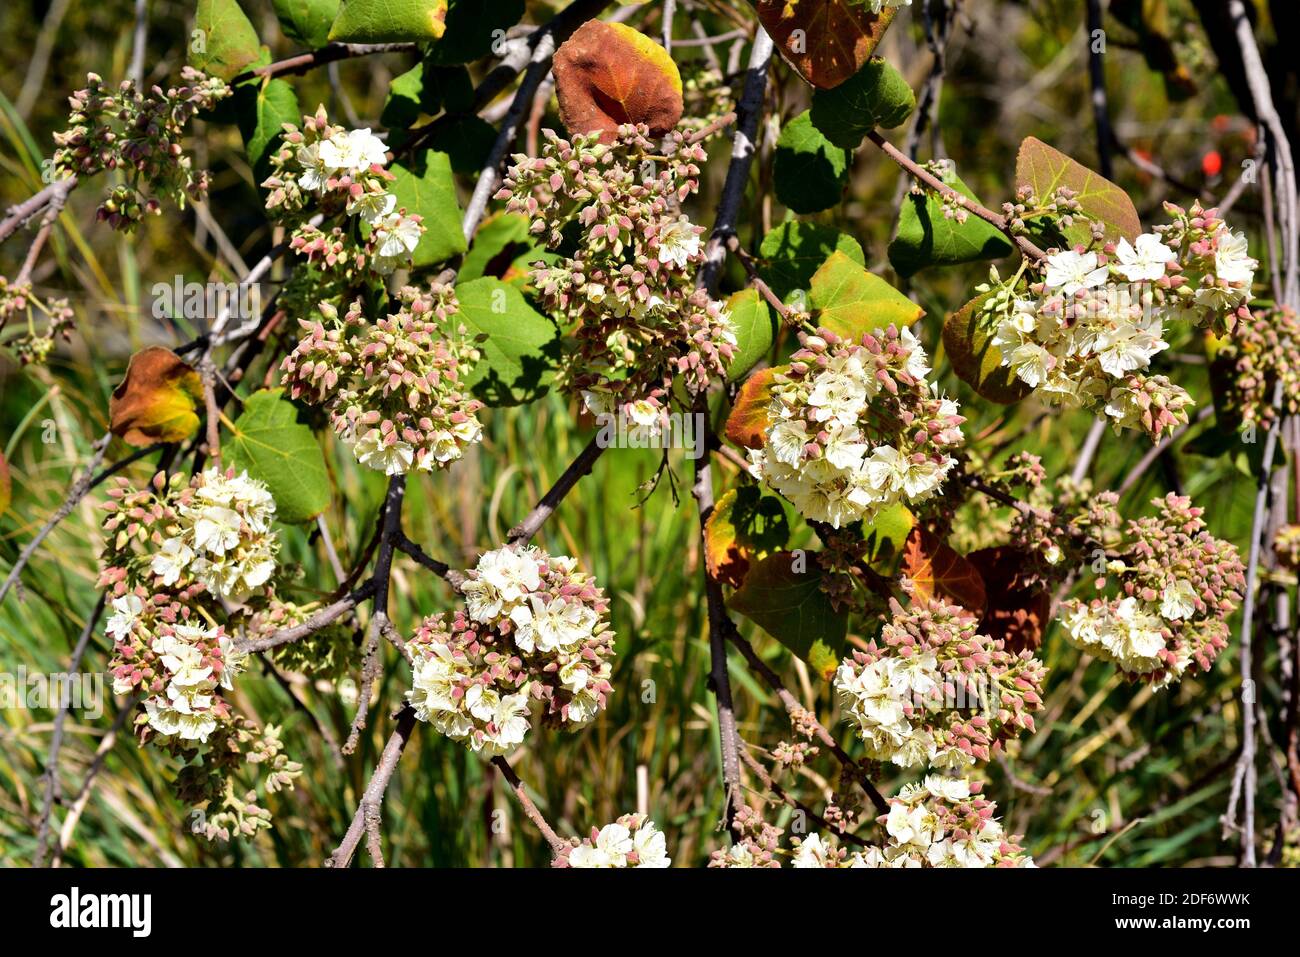 Dikbas oder afrikanische Wildbirne (Dombeya rotundifolia) ist ein kleiner Laub- und Heilbaum, der im südlichen Afrika beheimatet ist. Blütenstände Detail. Stockfoto